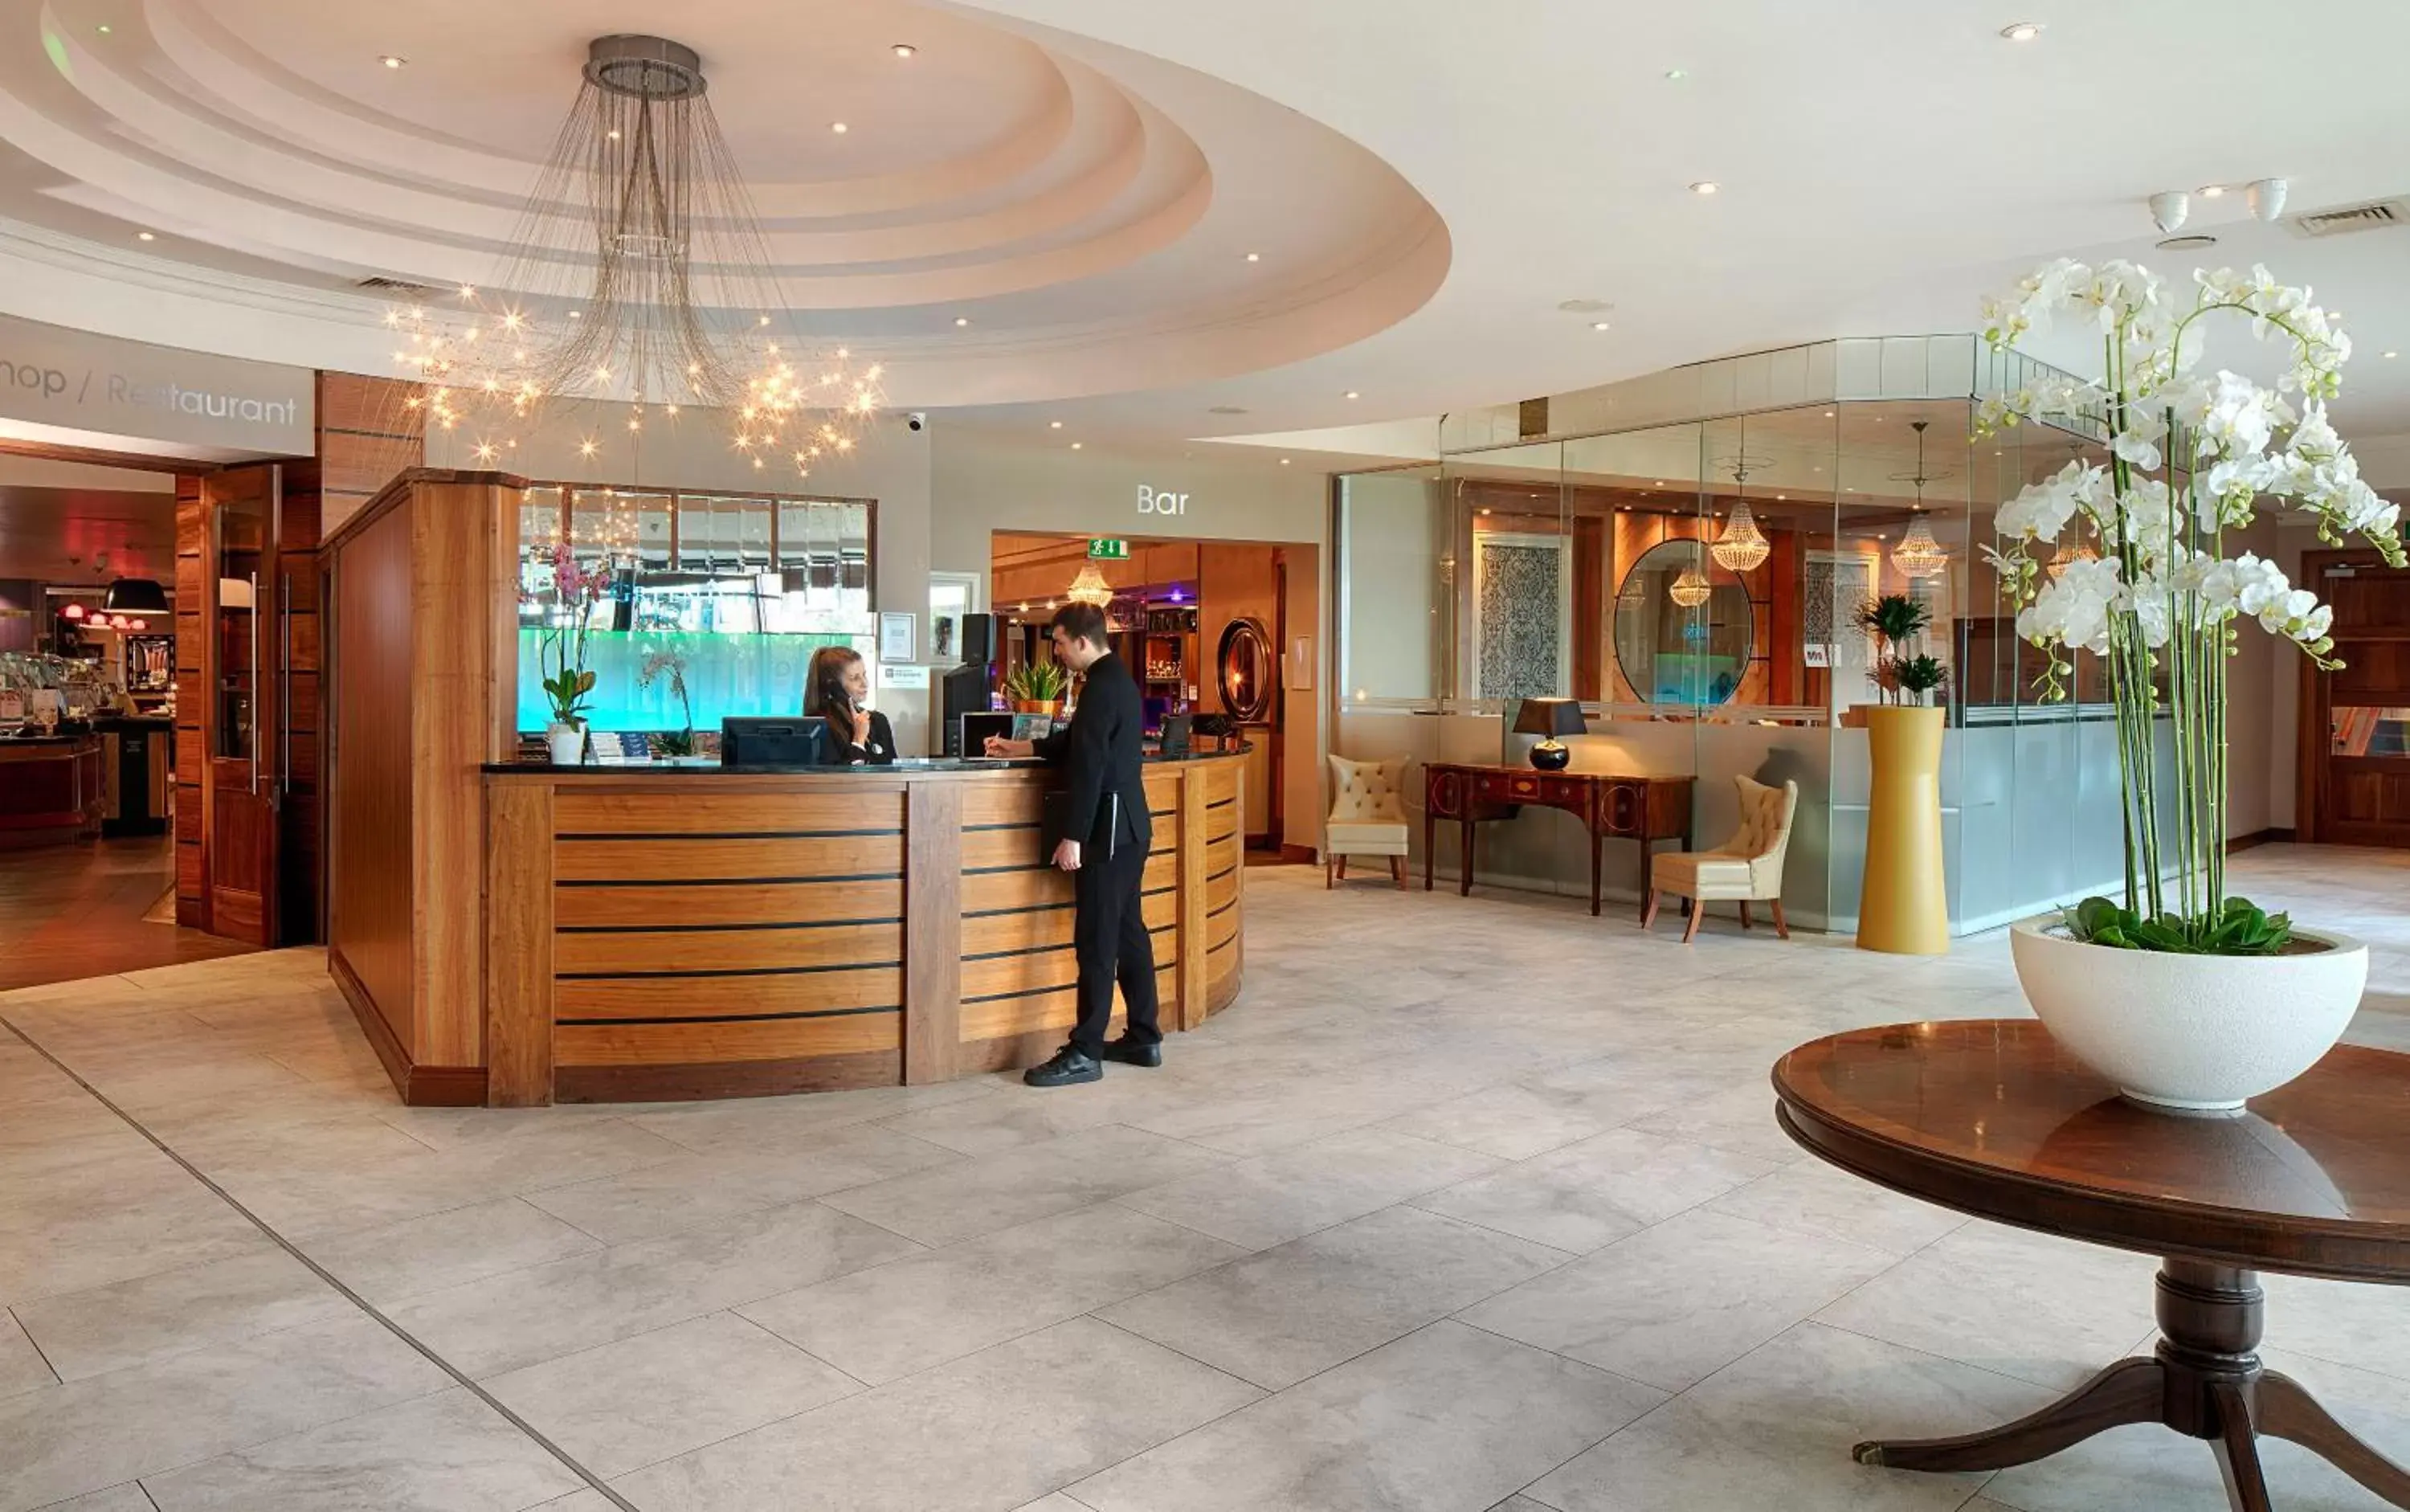 Lobby or reception in Green Isle Hotel, Dublin